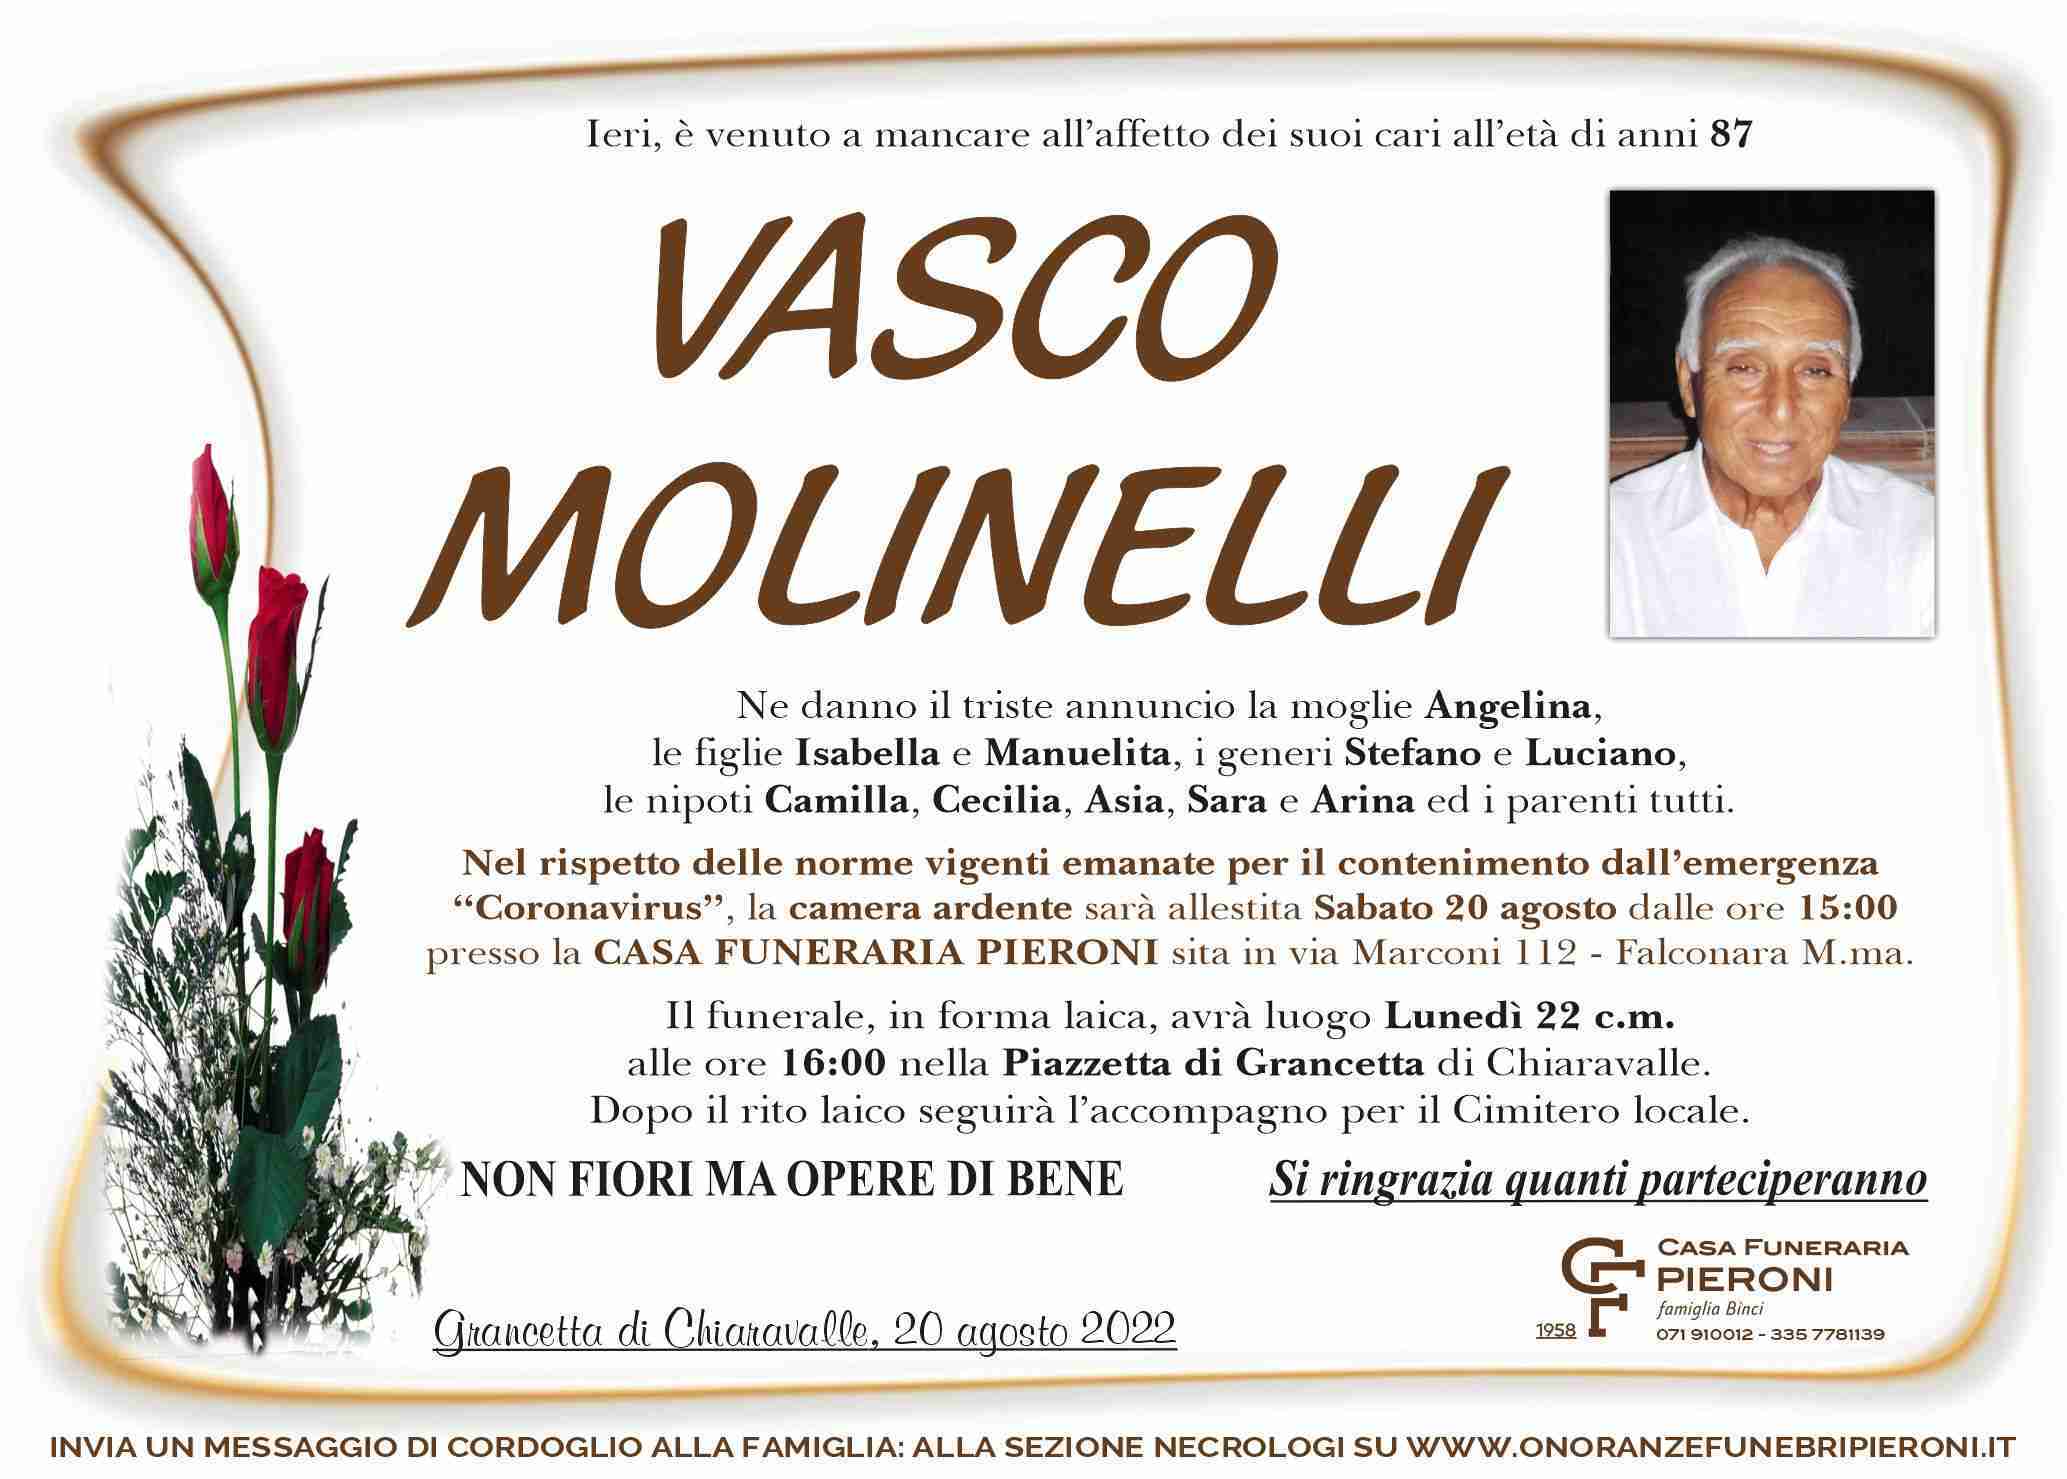 Vasco Molinelli